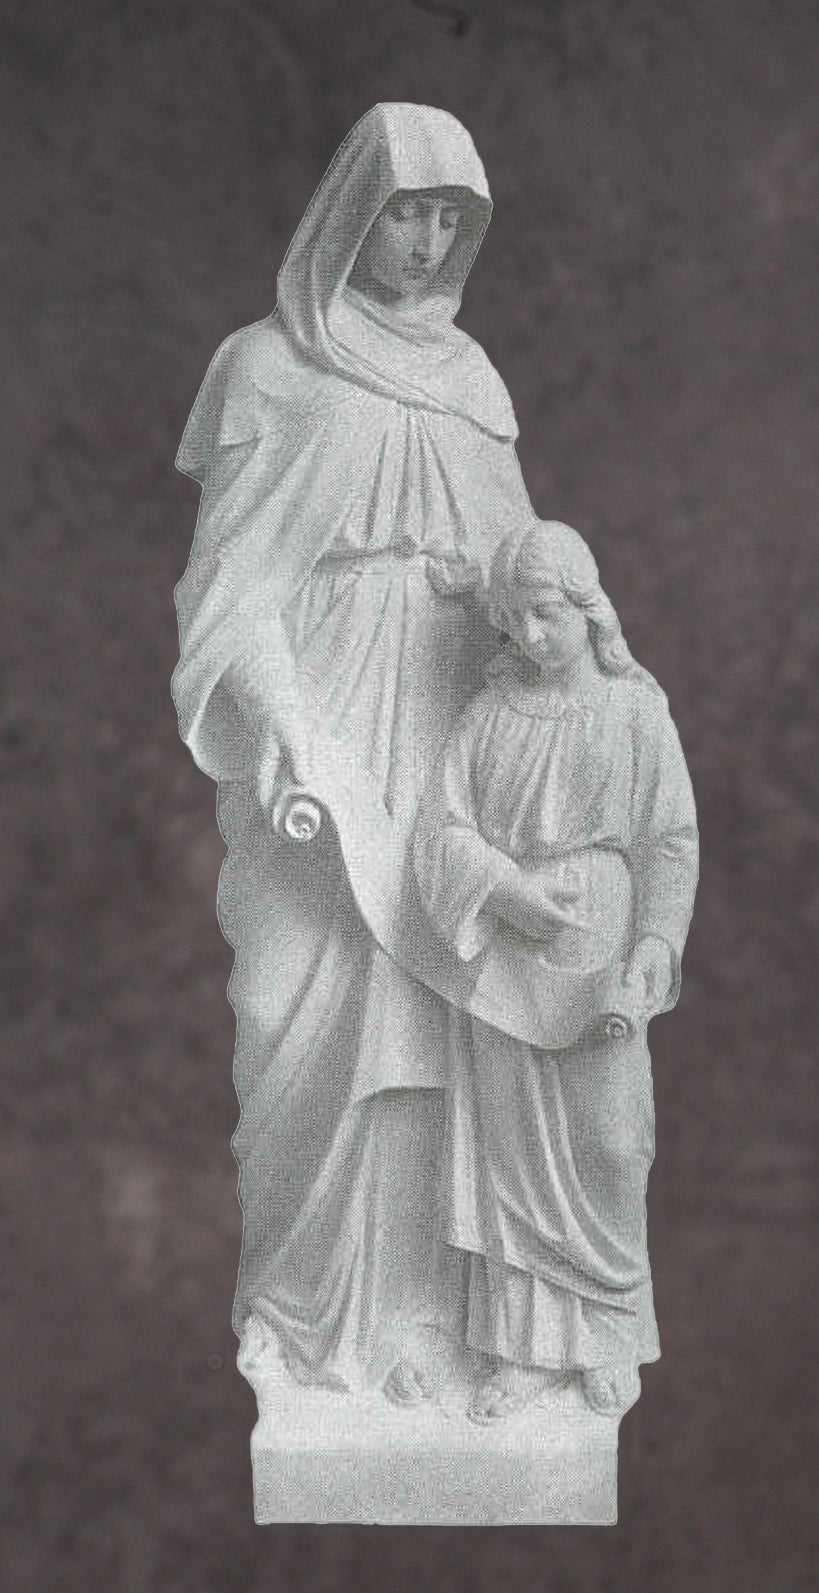 Saint Anne Marble Statue - 60”H